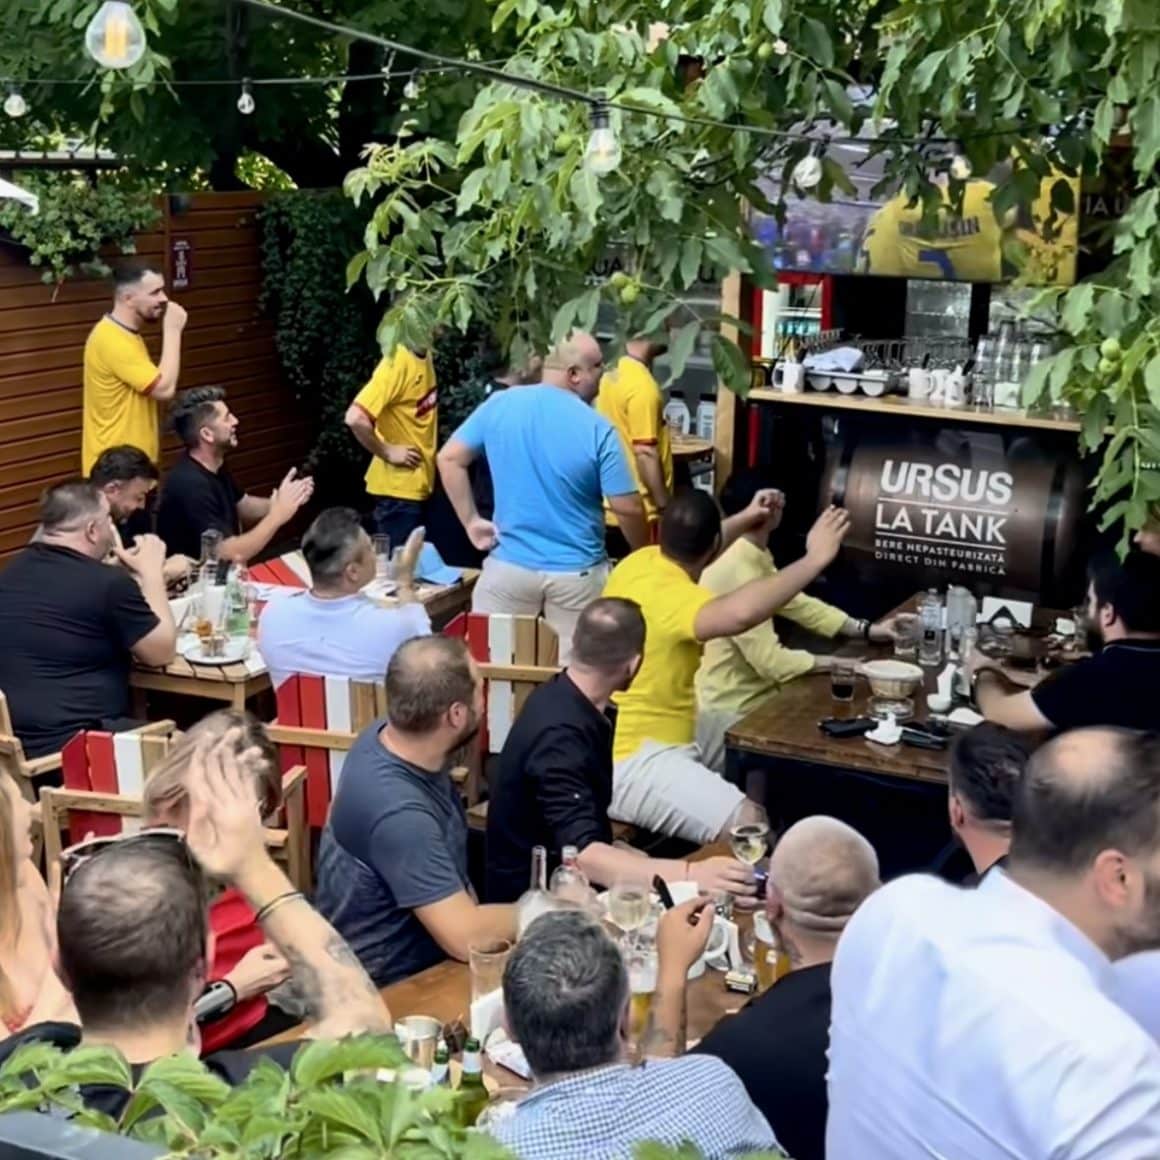 multi barbati asezati la mese in restaurant Draft Pub Tankeria Ursus din București, urmarind un meci difuzat la TV. terase și baruri sportive